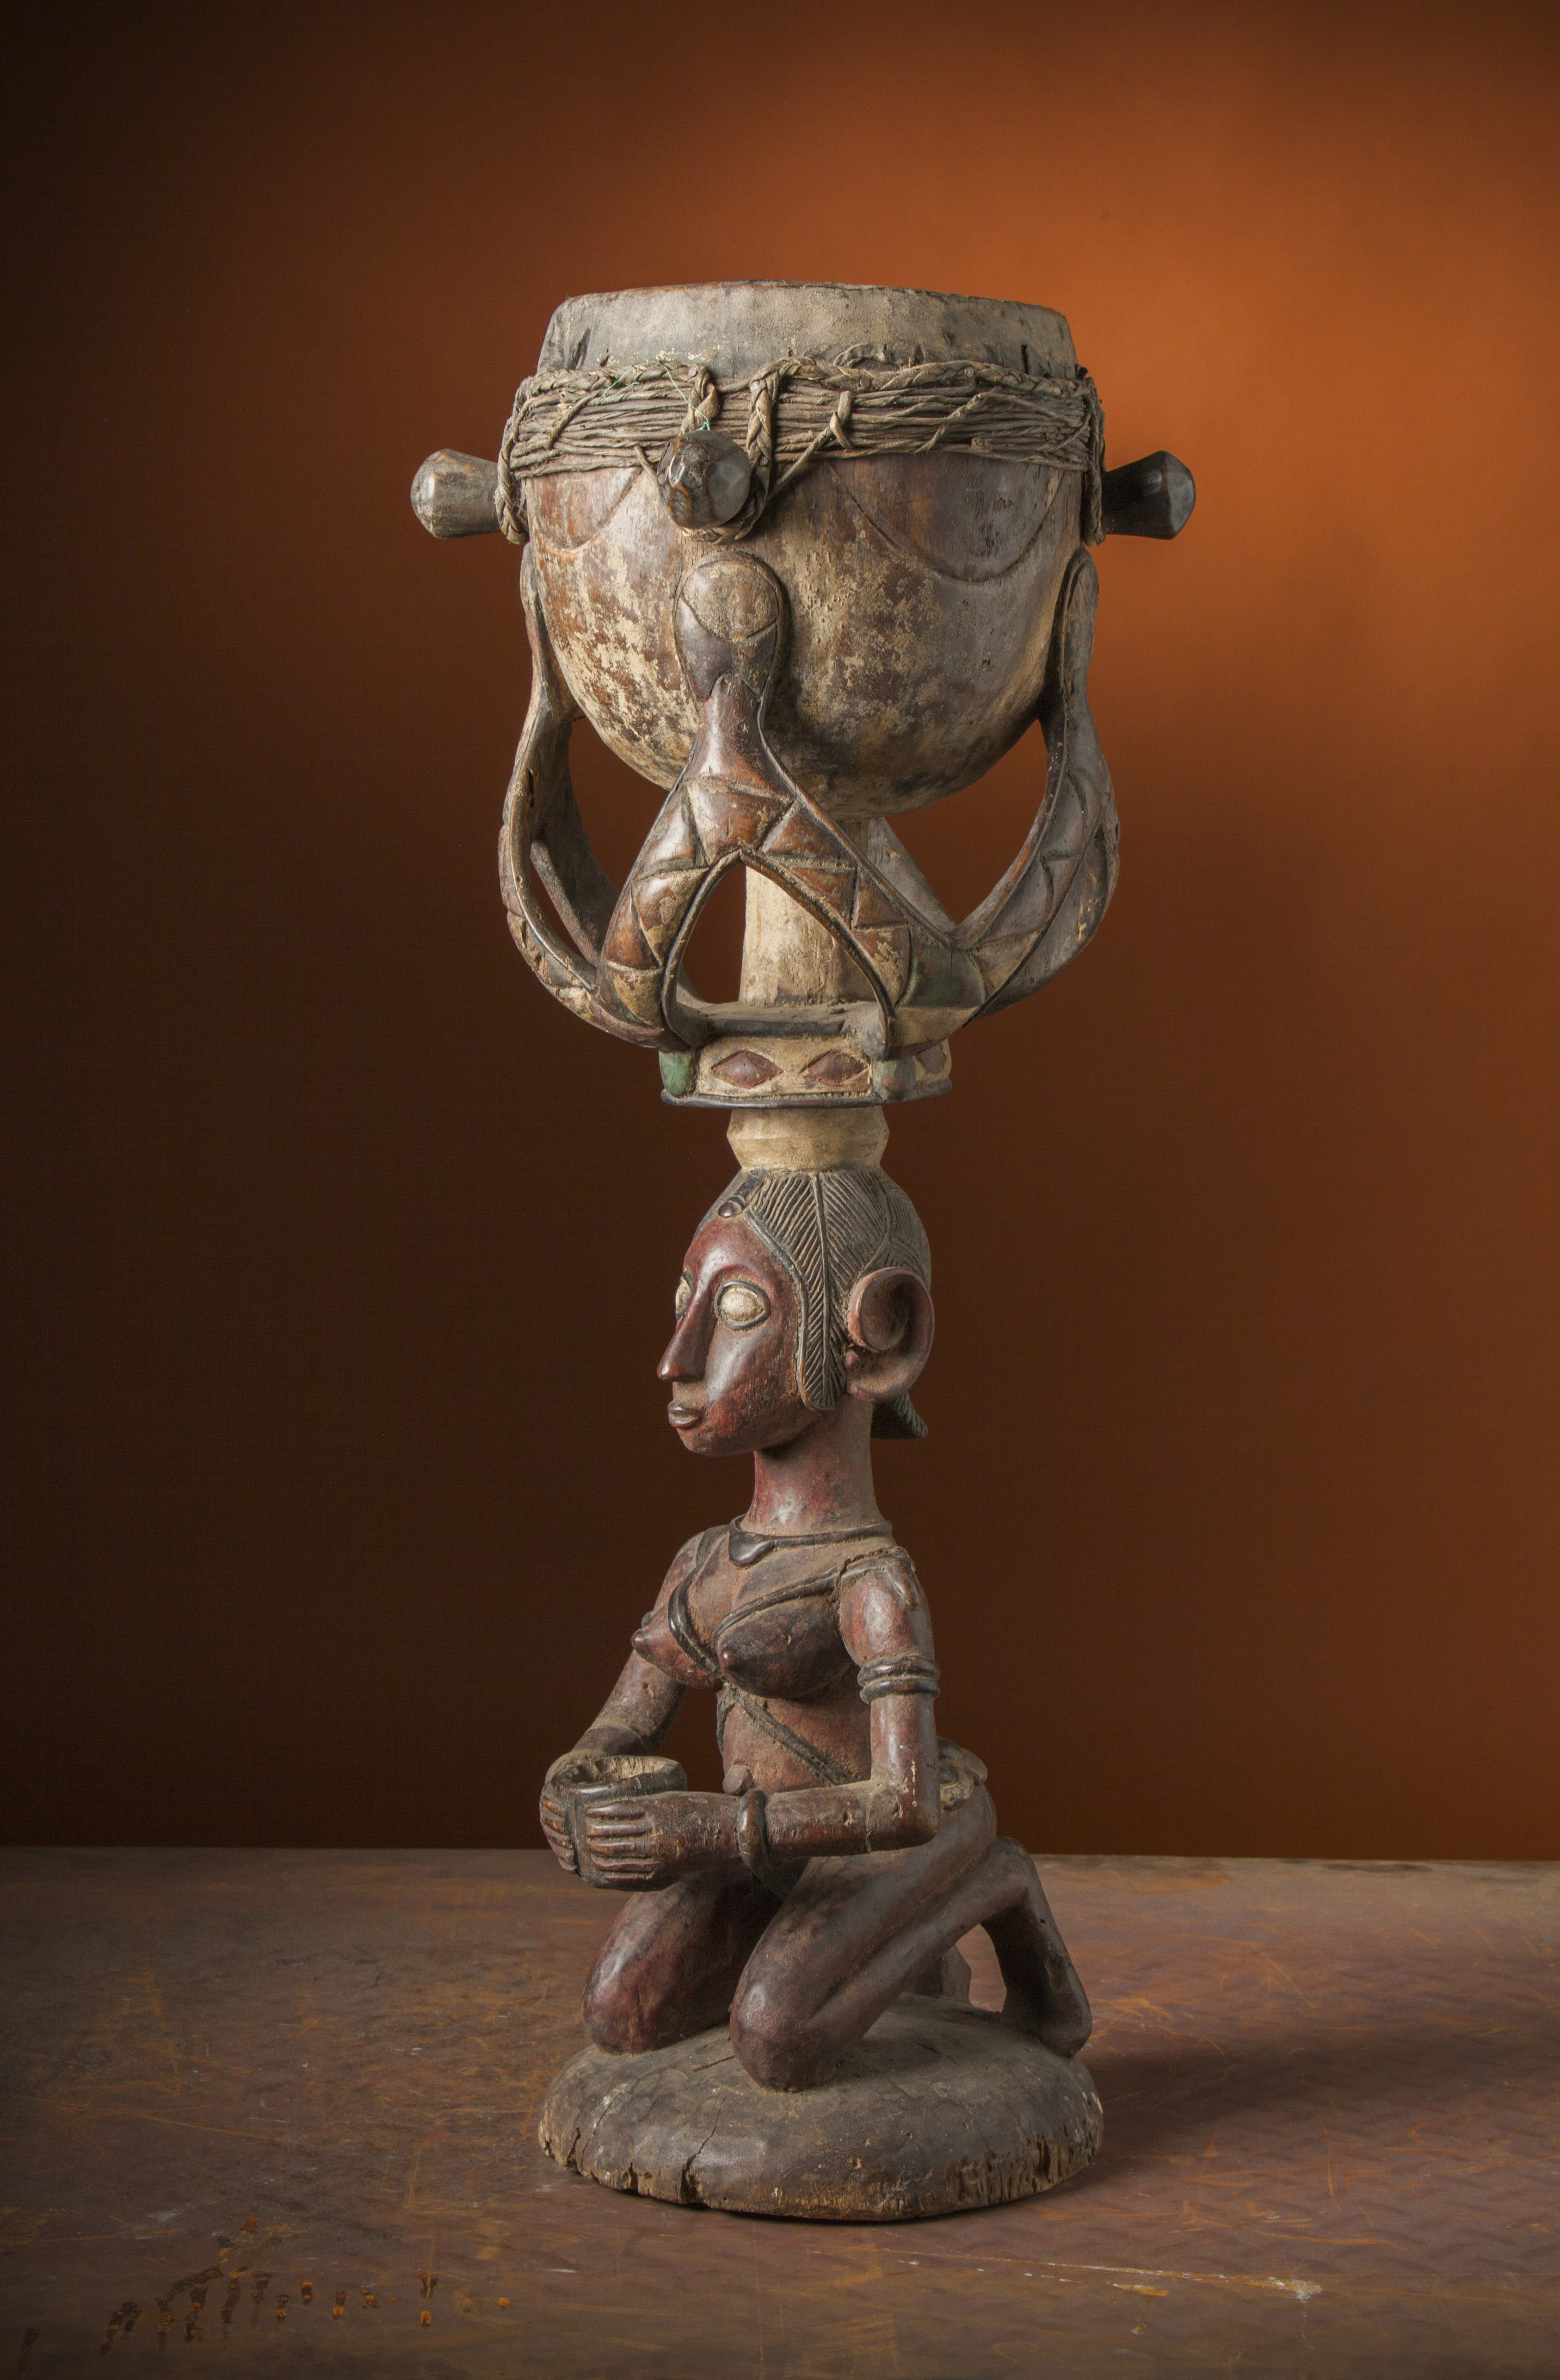 Baga, d`afrique : GuinÃ©e, statuette Baga, masque ancien africain Baga, art du GuinÃ©e - Art Africain, collection privÃ©es Belgique. Statue africaine de la tribu des Baga, provenant du GuinÃ©e, 1753:Tambour Baga.Il reprÃ©sente une femme  ancÃªtre agenouillÃ©e tenant un rÃ©cipient devant soi et portant un tambour sur la tÃªte
(anc.col.Sylla lamceini 1974)

Baga trommel.Het stelt een geknielde voorouder voor die een pot voor zich houdt en de trommel op haar hoofd draagt.(oud col.Sylla lamceini 1974)








. art,culture,masque,statue,statuette,pot,ivoire,exposition,expo,masque original,masques,statues,statuettes,pots,expositions,expo,masques originaux,collectionneur d`art,art africain,culture africaine,masque africain,statue africaine,statuette africaine,pot africain,ivoire africain,exposition africain,expo africain,masque origina africainl,masques africains,statues africaines,statuettes africaines,pots africains,expositions africaines,expo africaines,masques originaux  africains,collectionneur d`art africain